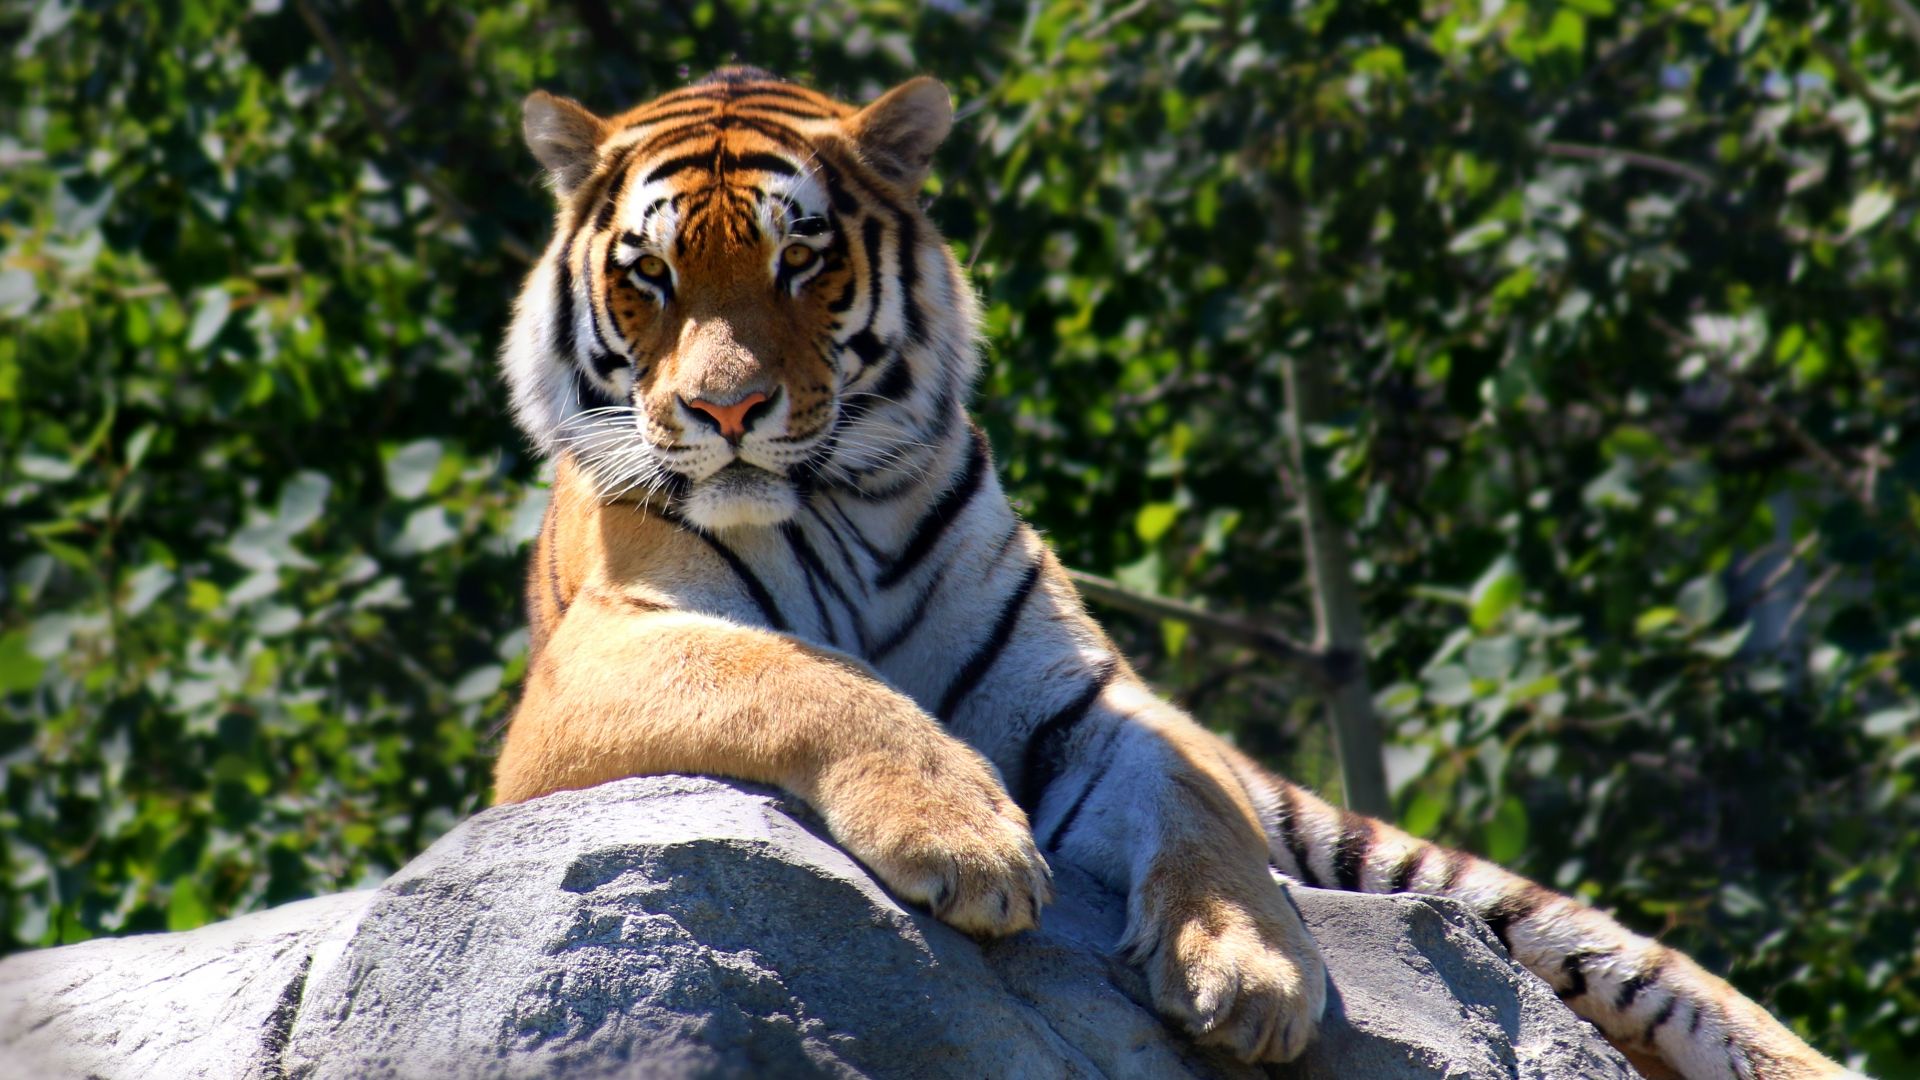 Wallpaper Tiger sitting on rock, animal, wildlife